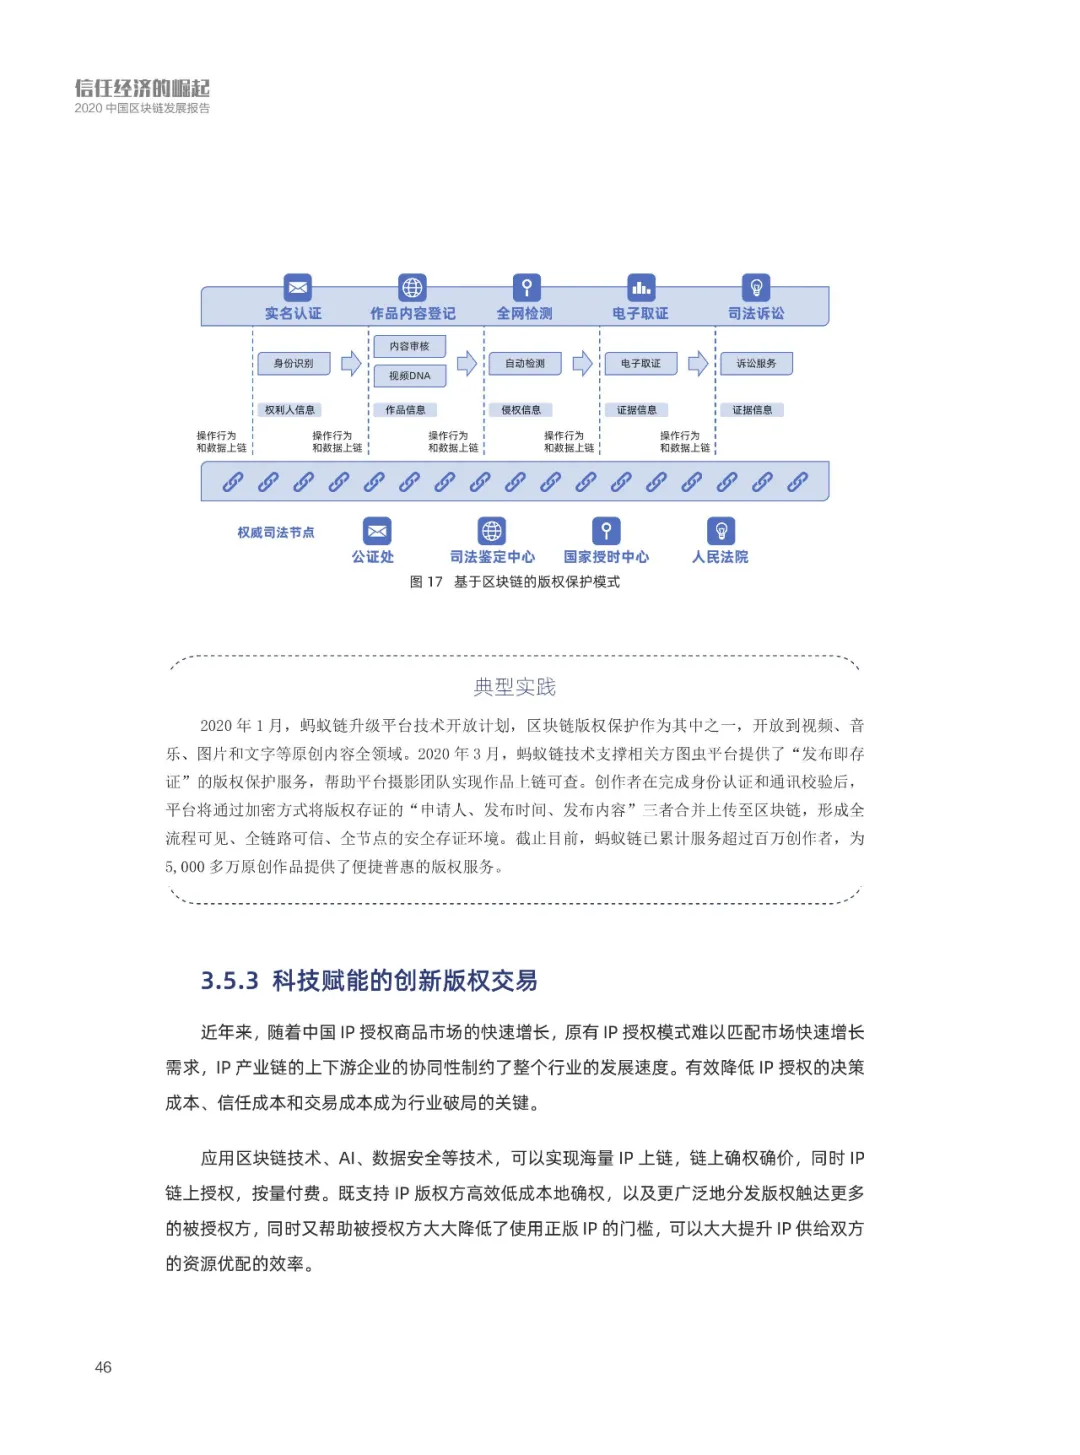 信任经济的崛起——2020中国区块链发展报告_区块链_47